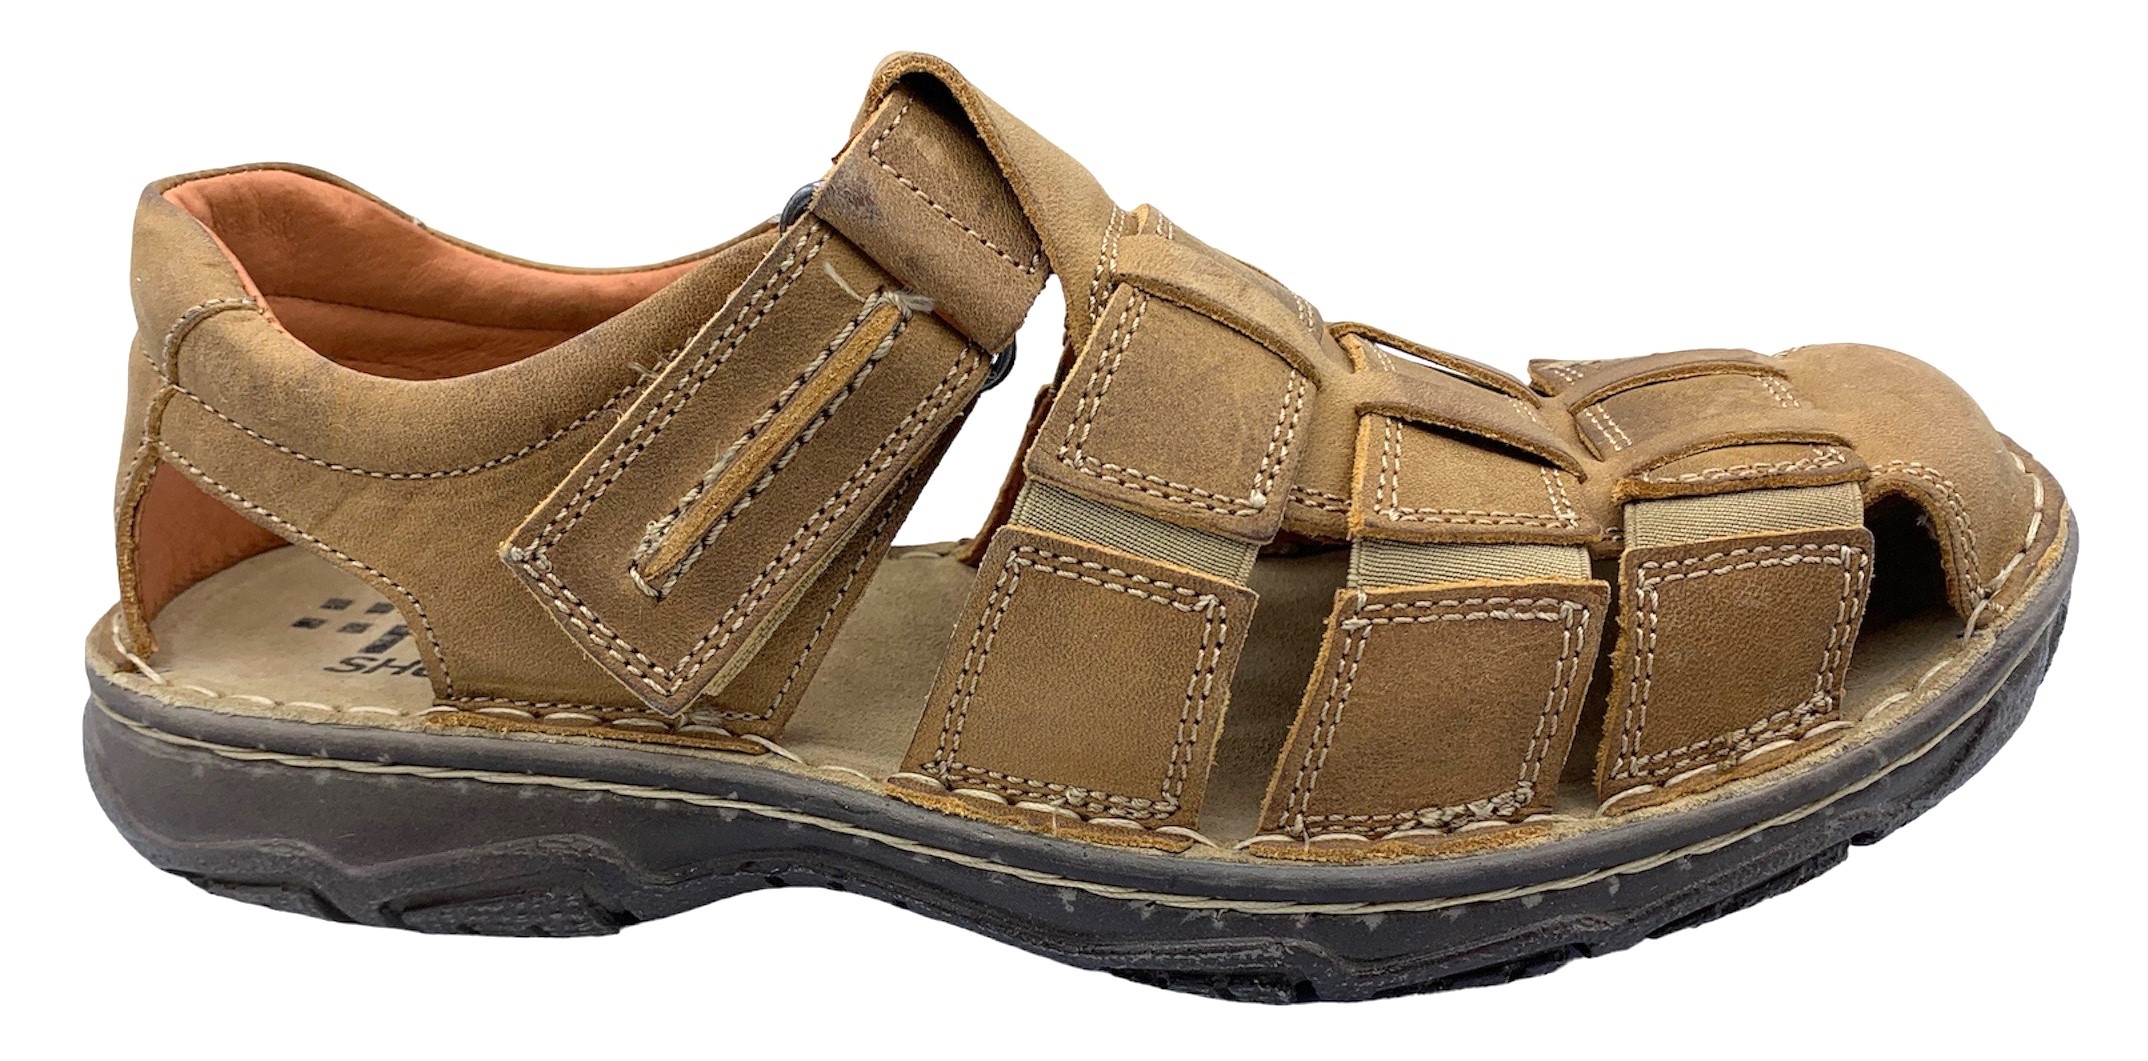 Pánské sandály REGA shoes 11141 hnědé Velikost: 41 (EU)